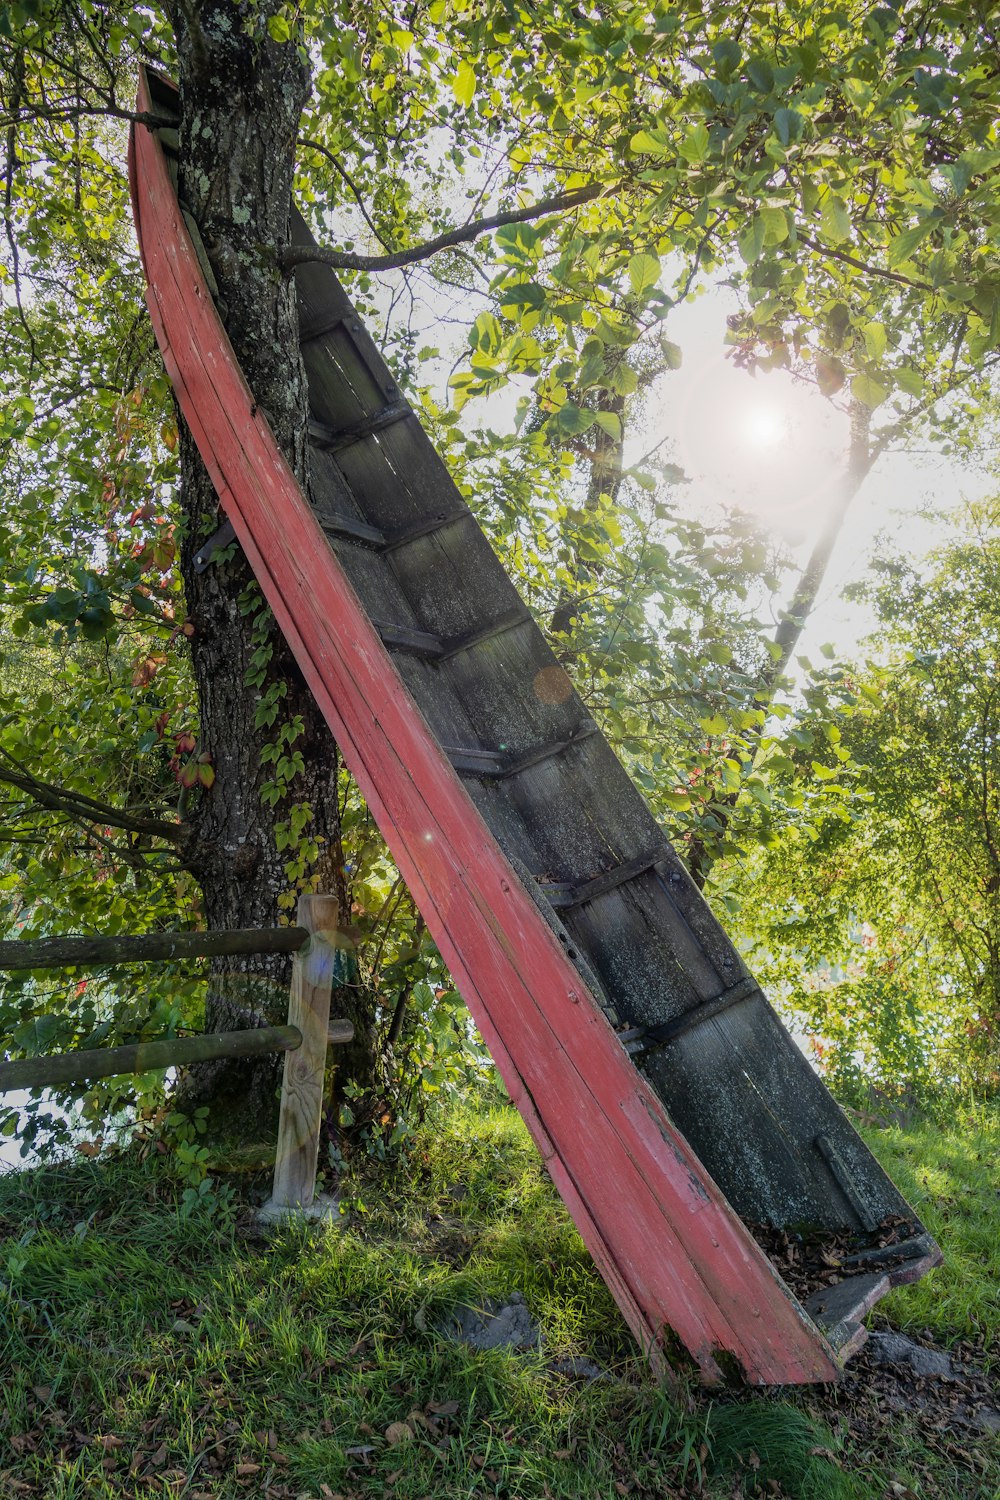 ein kaputter roter Regenschirm, der auf einem Baum sitzt